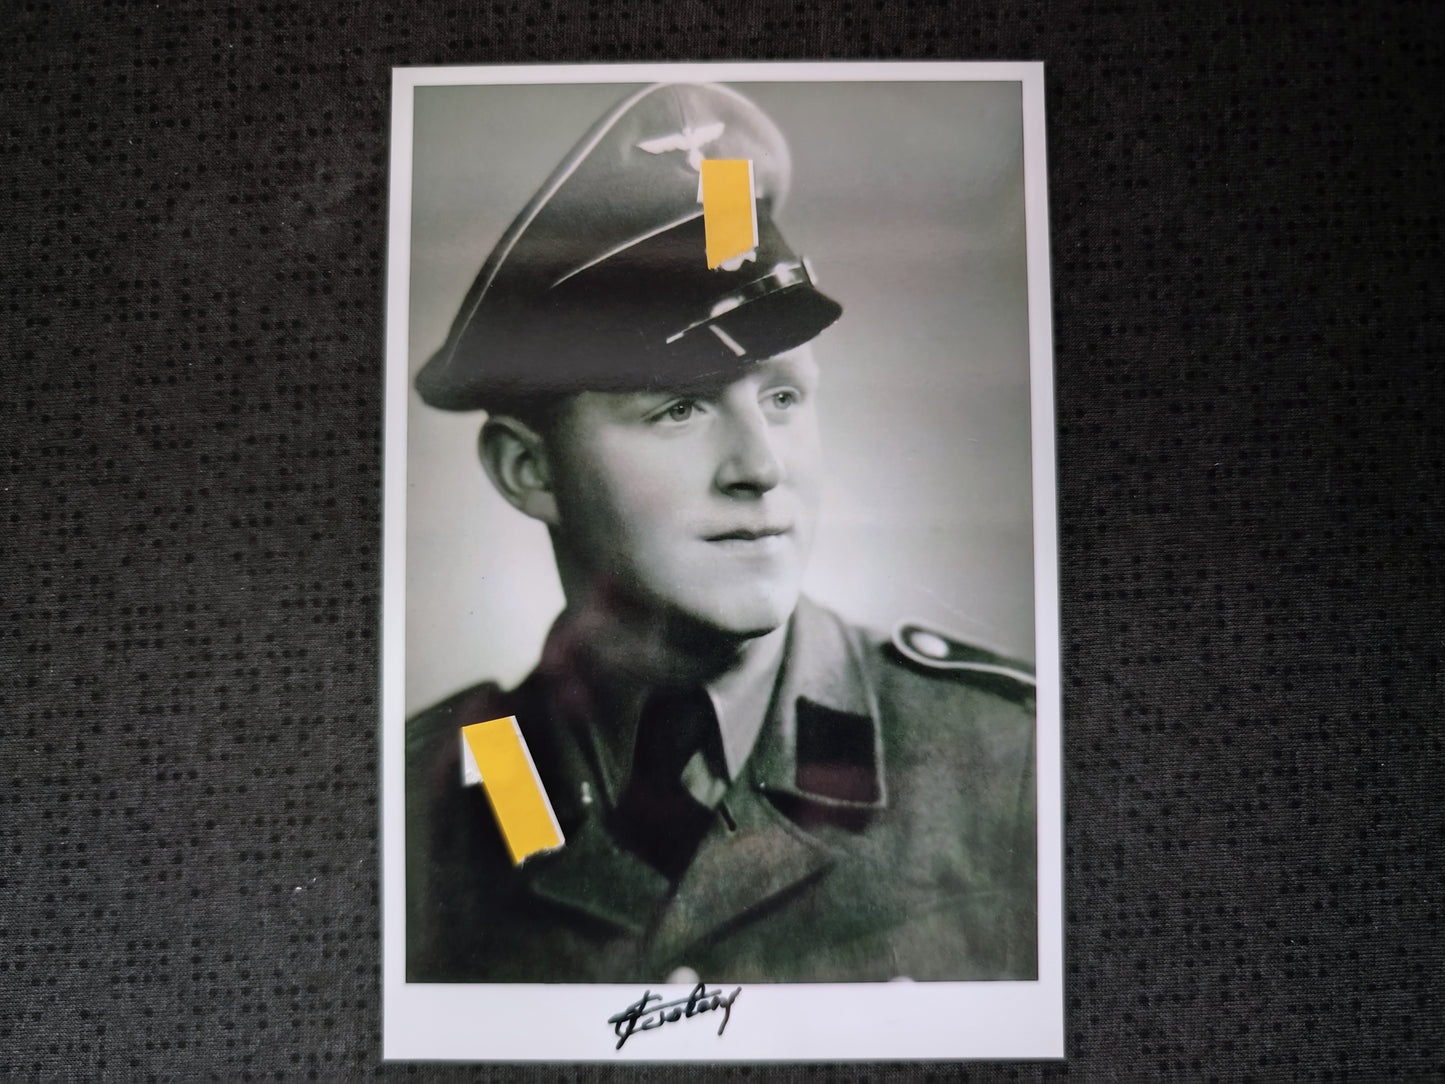 Buch "Dries Coolens - Ein Zeitzeuge berichtet" SS-Oberscharführer der Legion Flandern und SS-Division Langemarck inkl. Foto-Autogramm